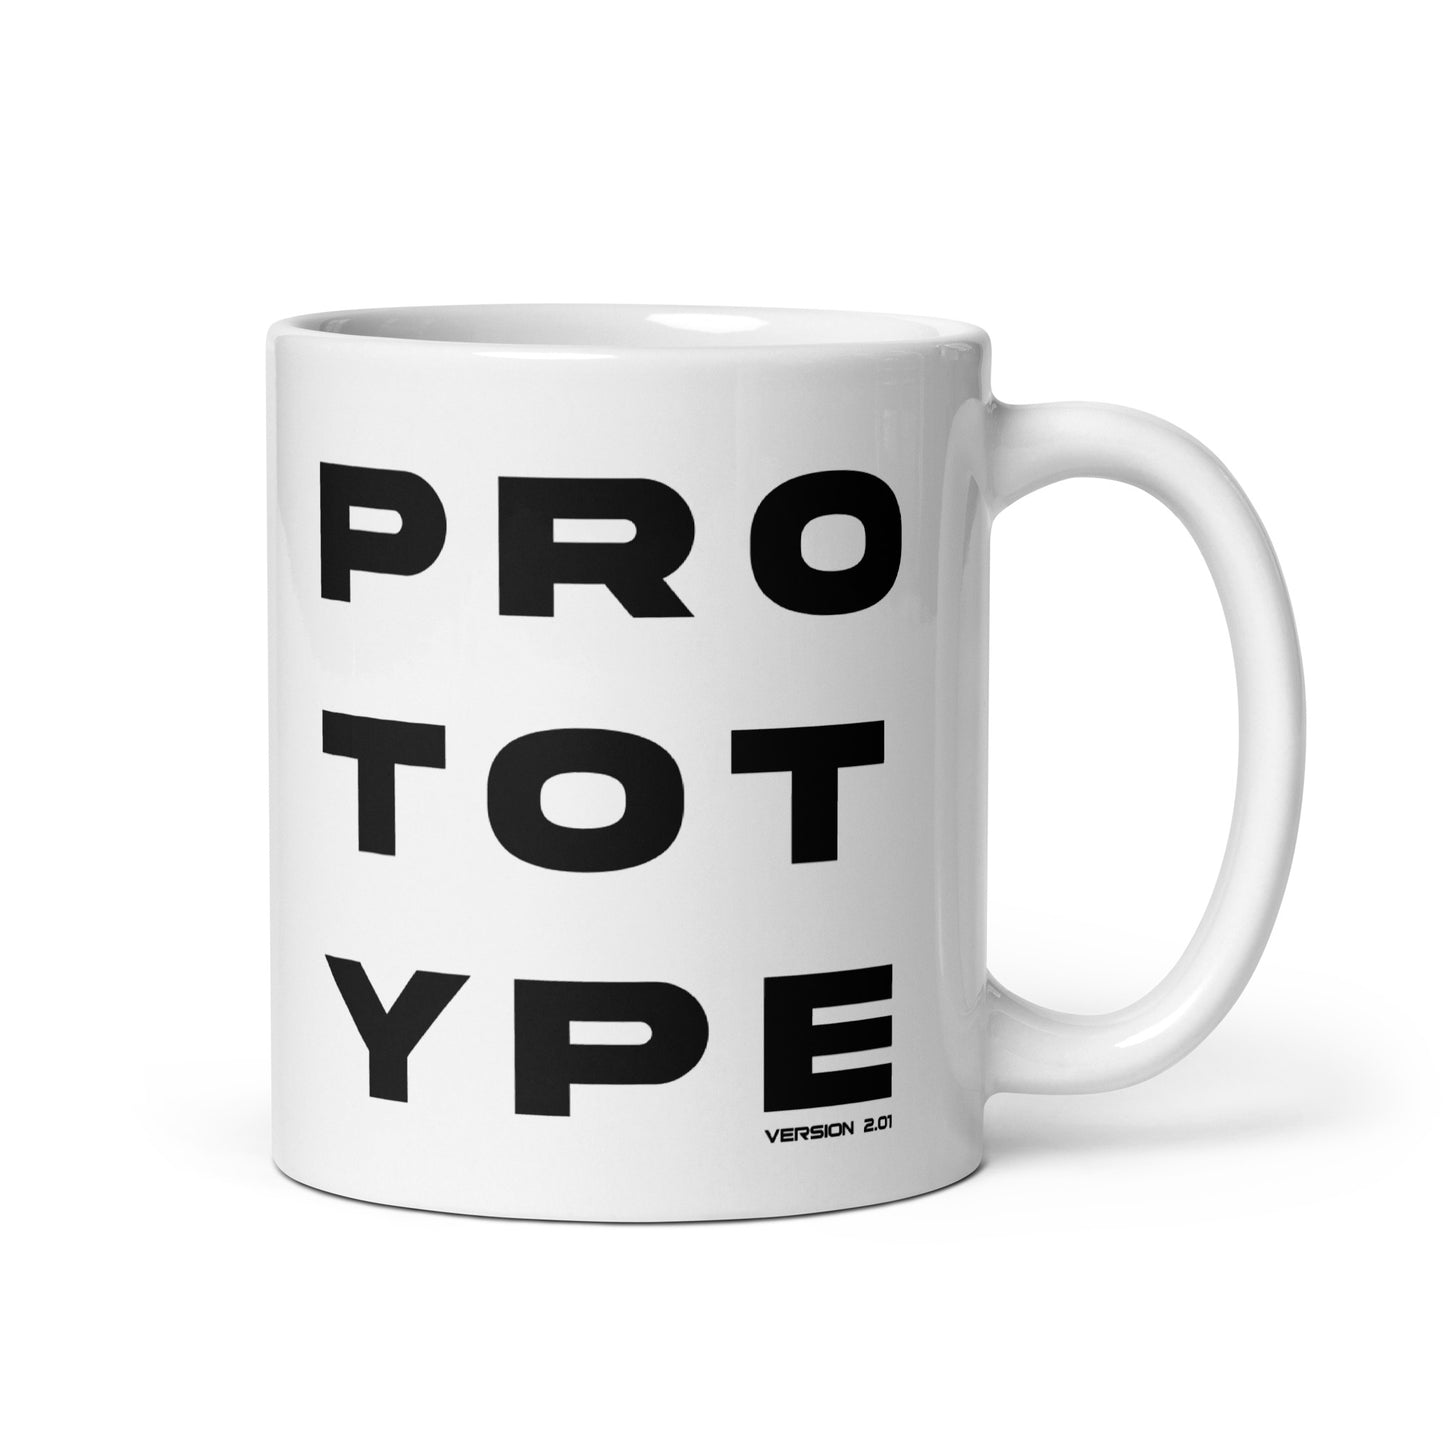 Prototype (v3) White glossy mug